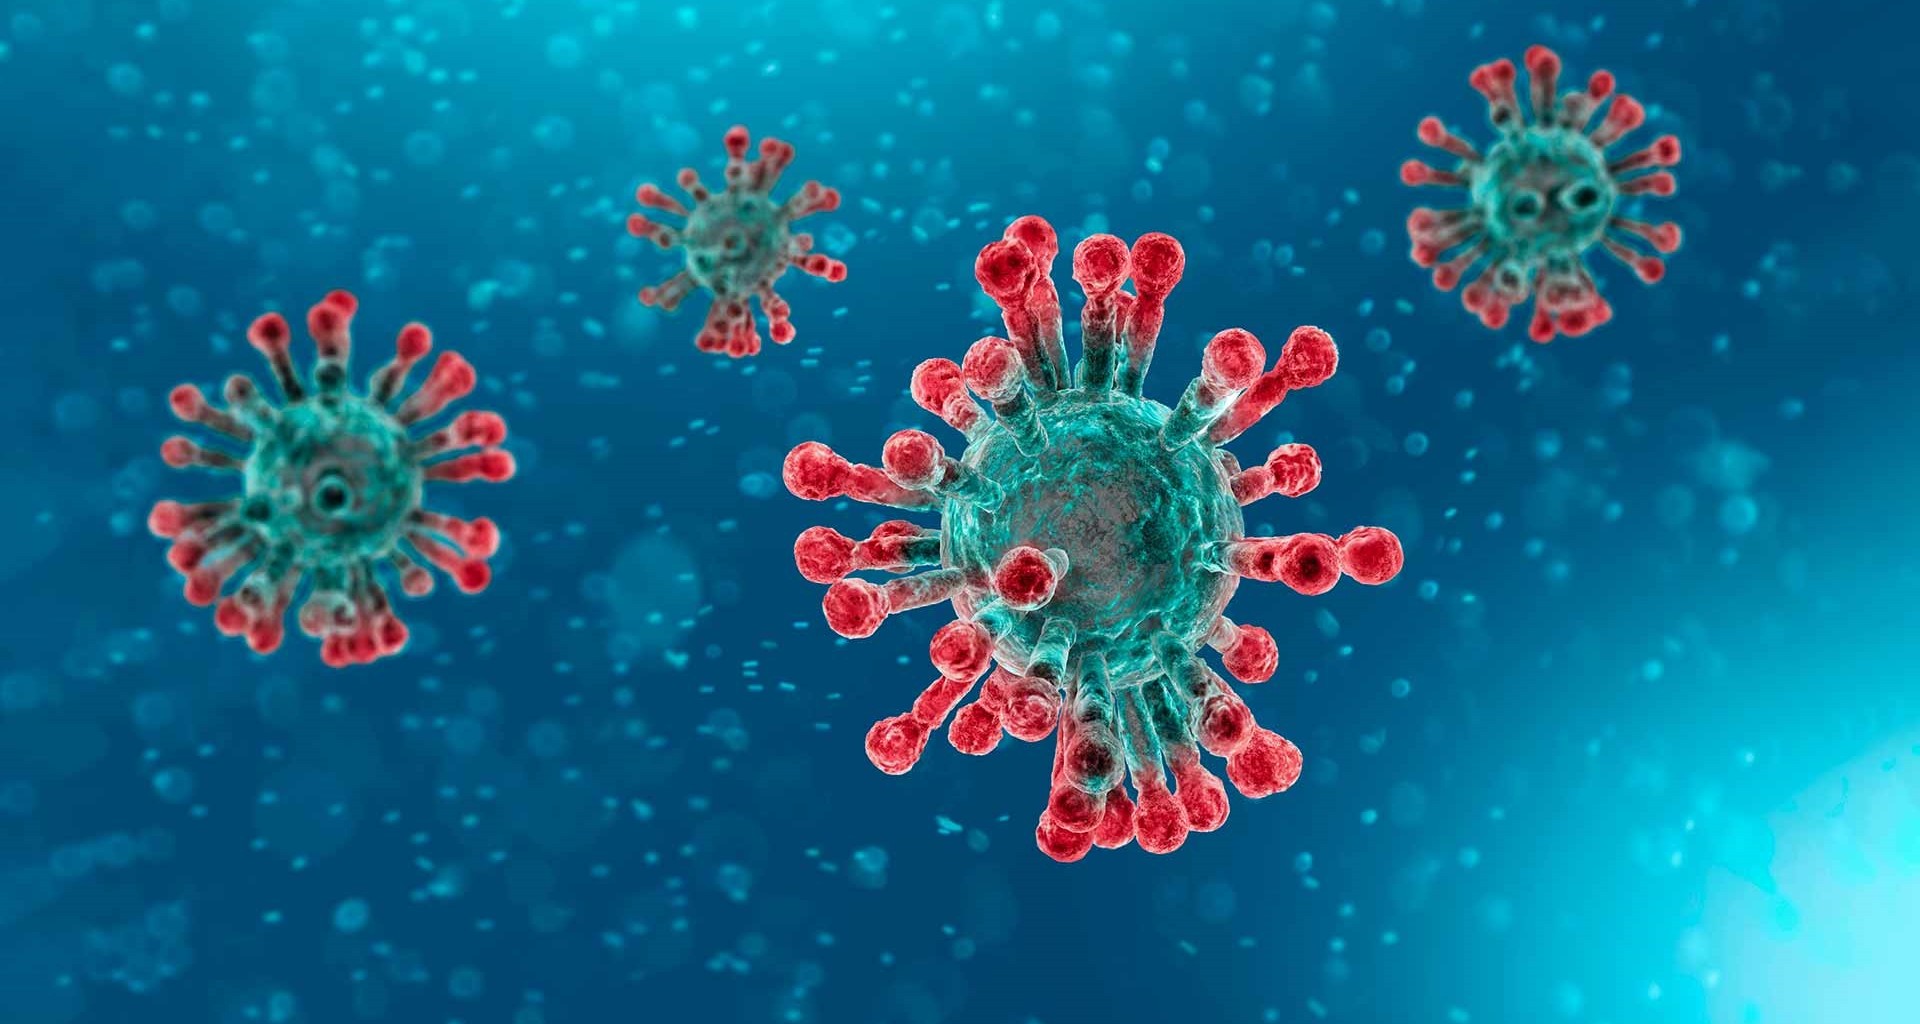 Informació sobre la crisi del Coronavirus